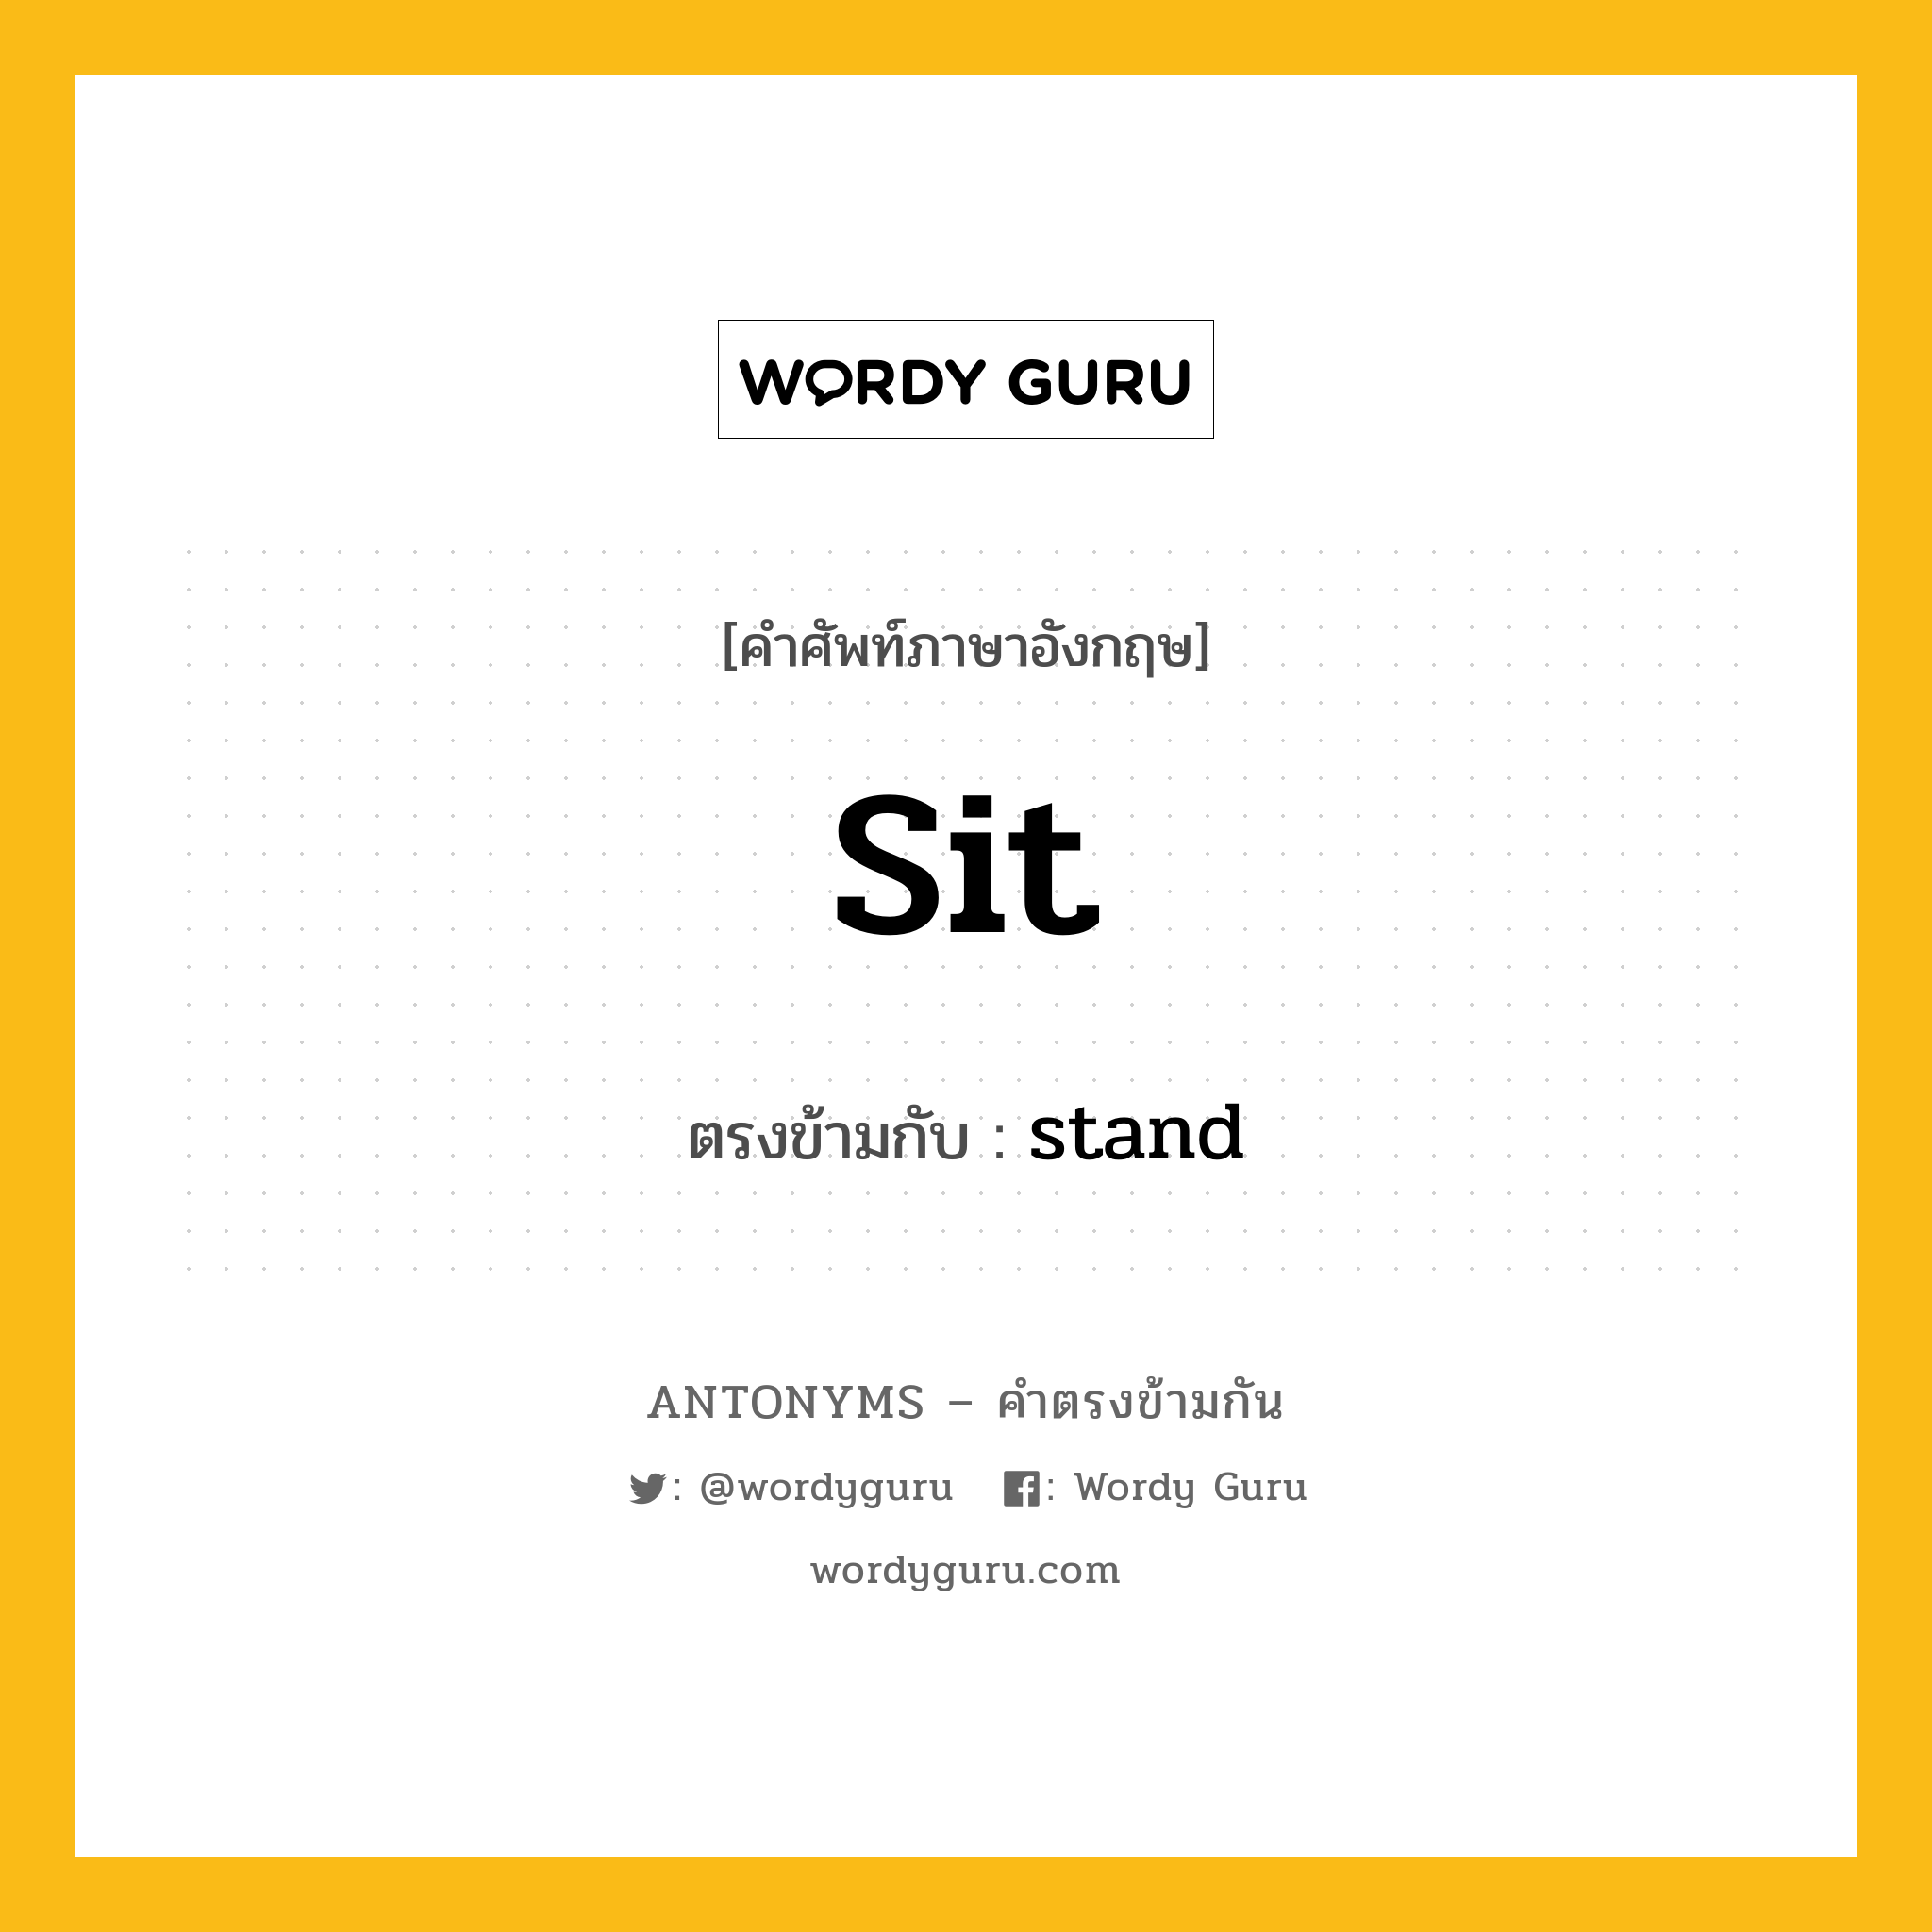 sit เป็นคำตรงข้ามกับคำไหนบ้าง?, คำศัพท์ภาษาอังกฤษ sit ตรงข้ามกับ stand หมวด stand